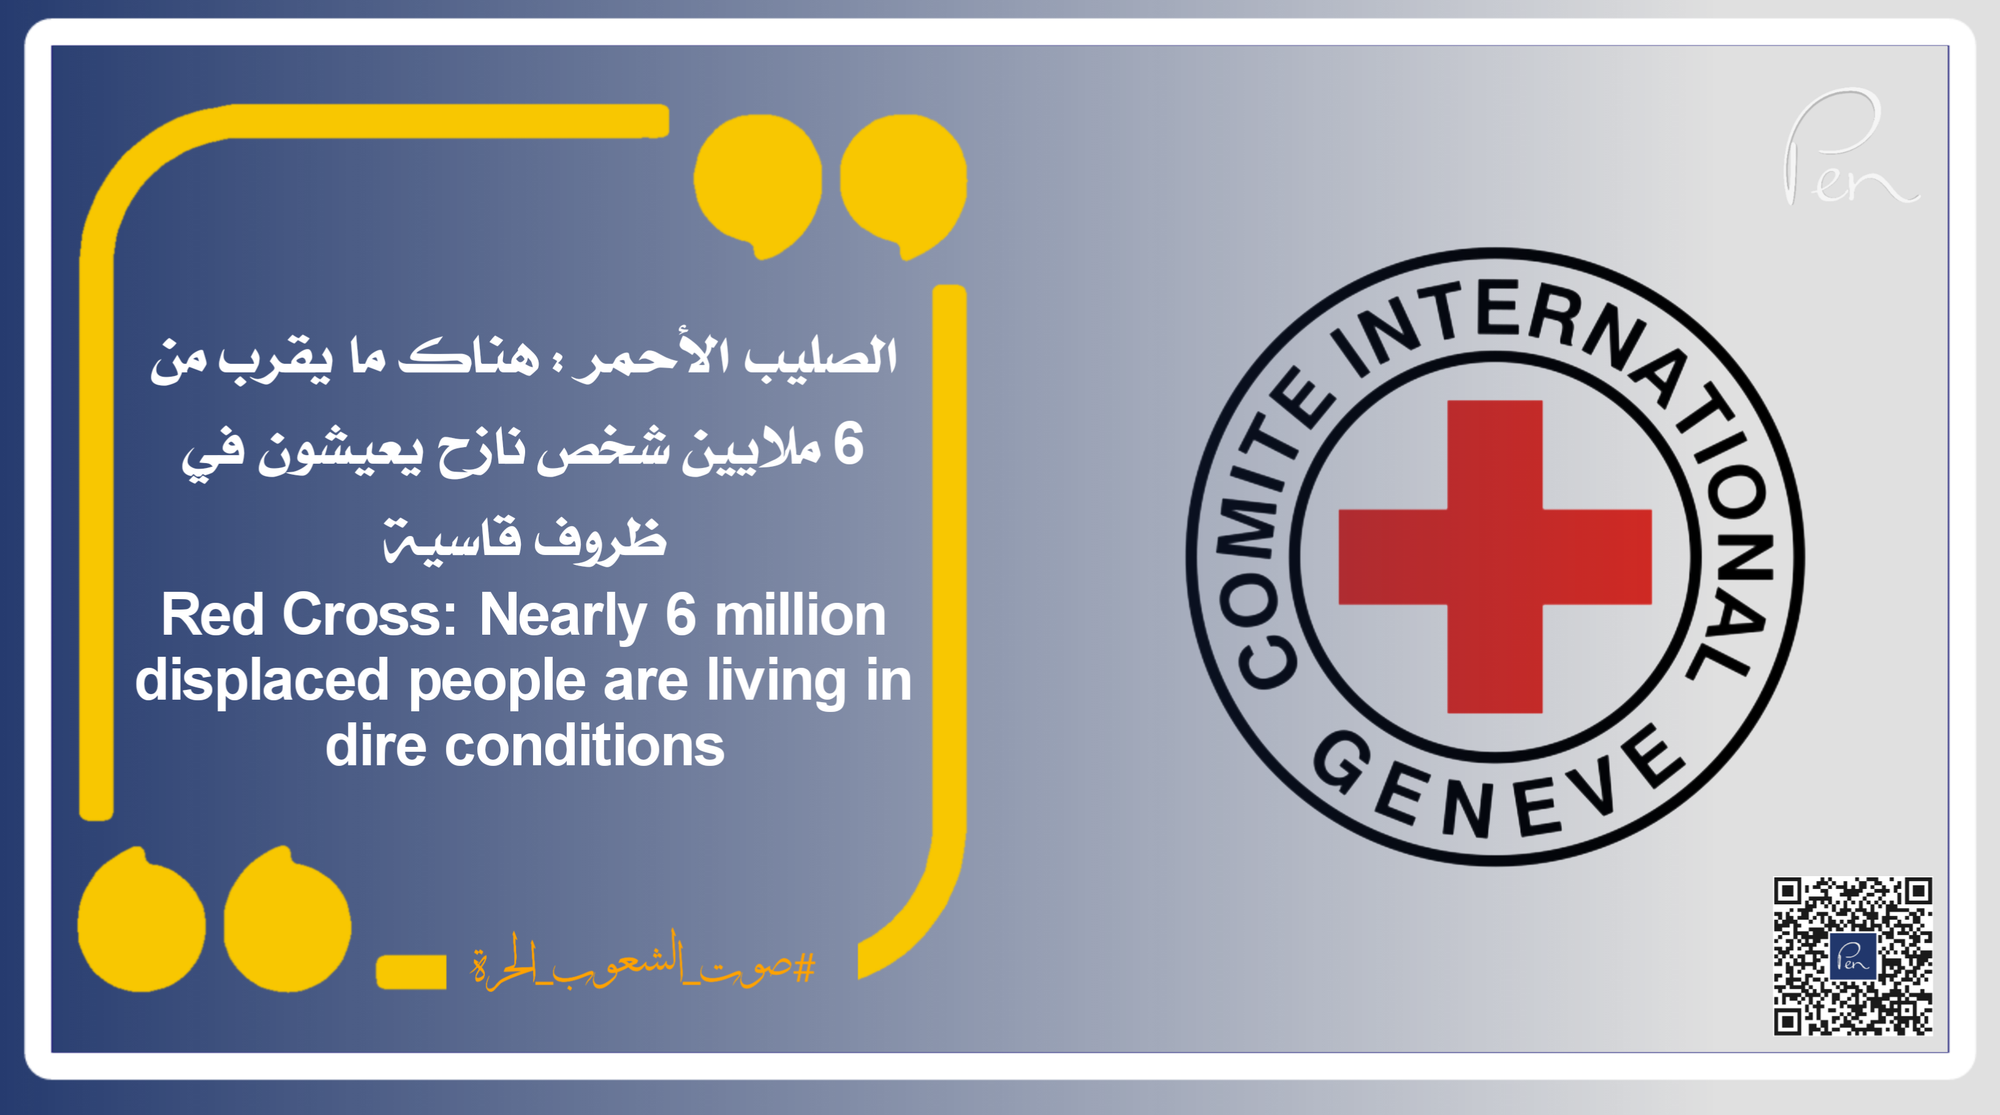 الصليب الأحمر : هناك ما يقرب من 6 ملايين شخص نازح يعيشون في ظروف قاسية